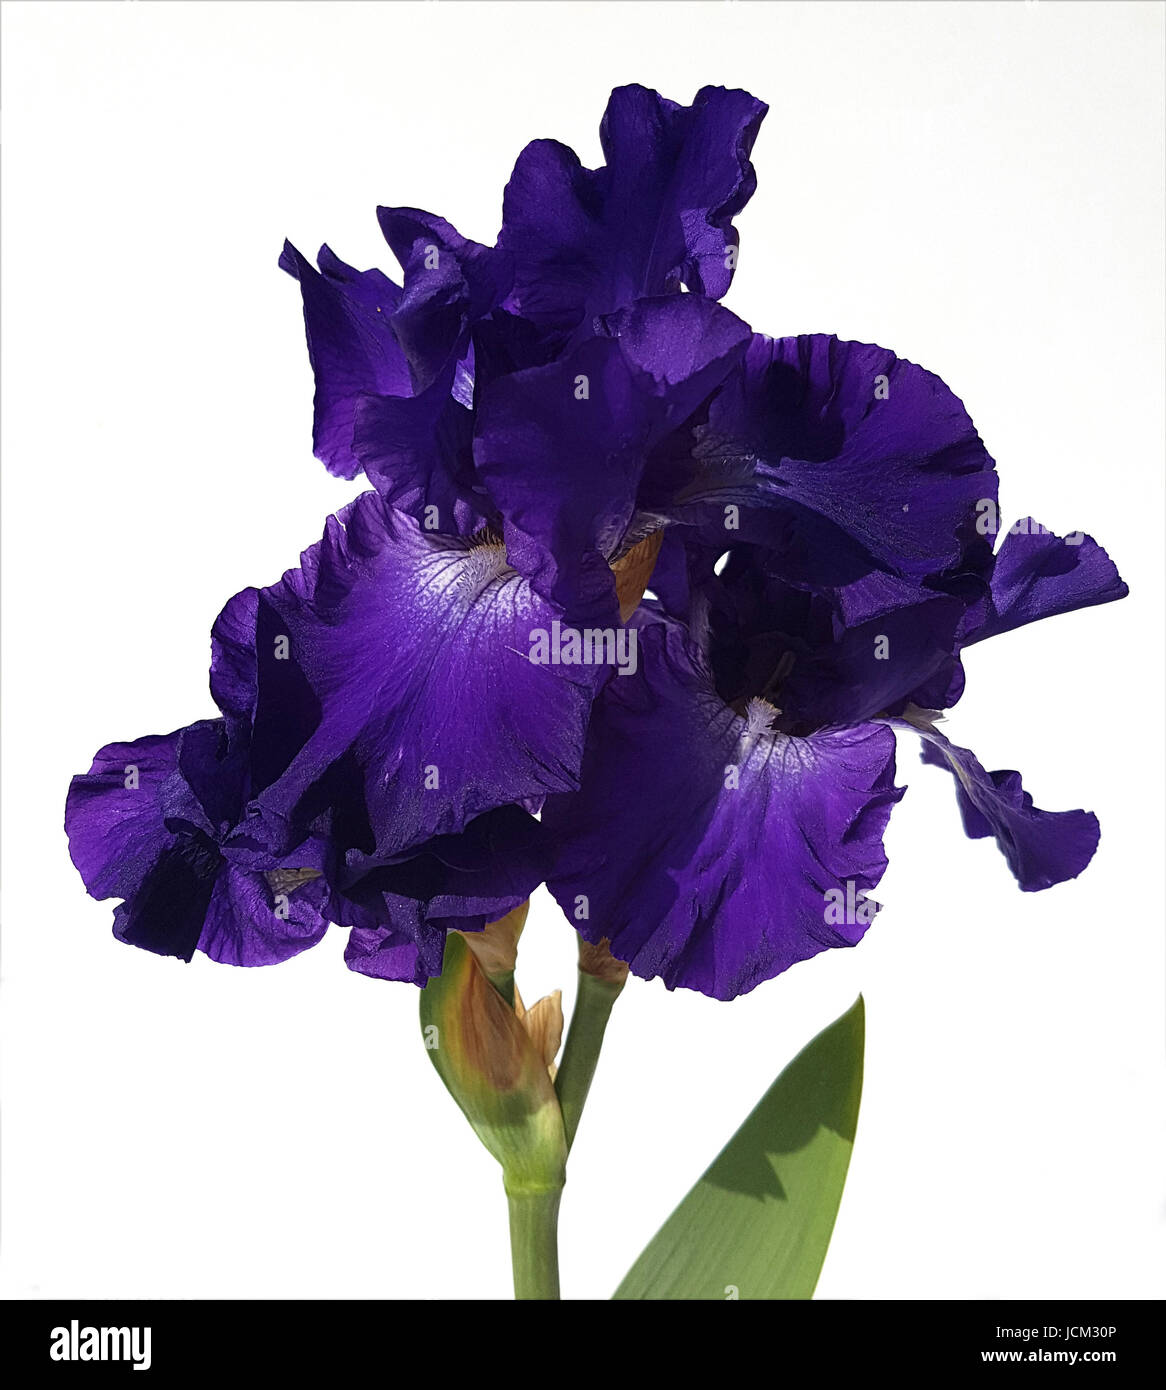 Schwertlilie, Iris Barbata-Elatior, Blue Rhythm Stock Photo